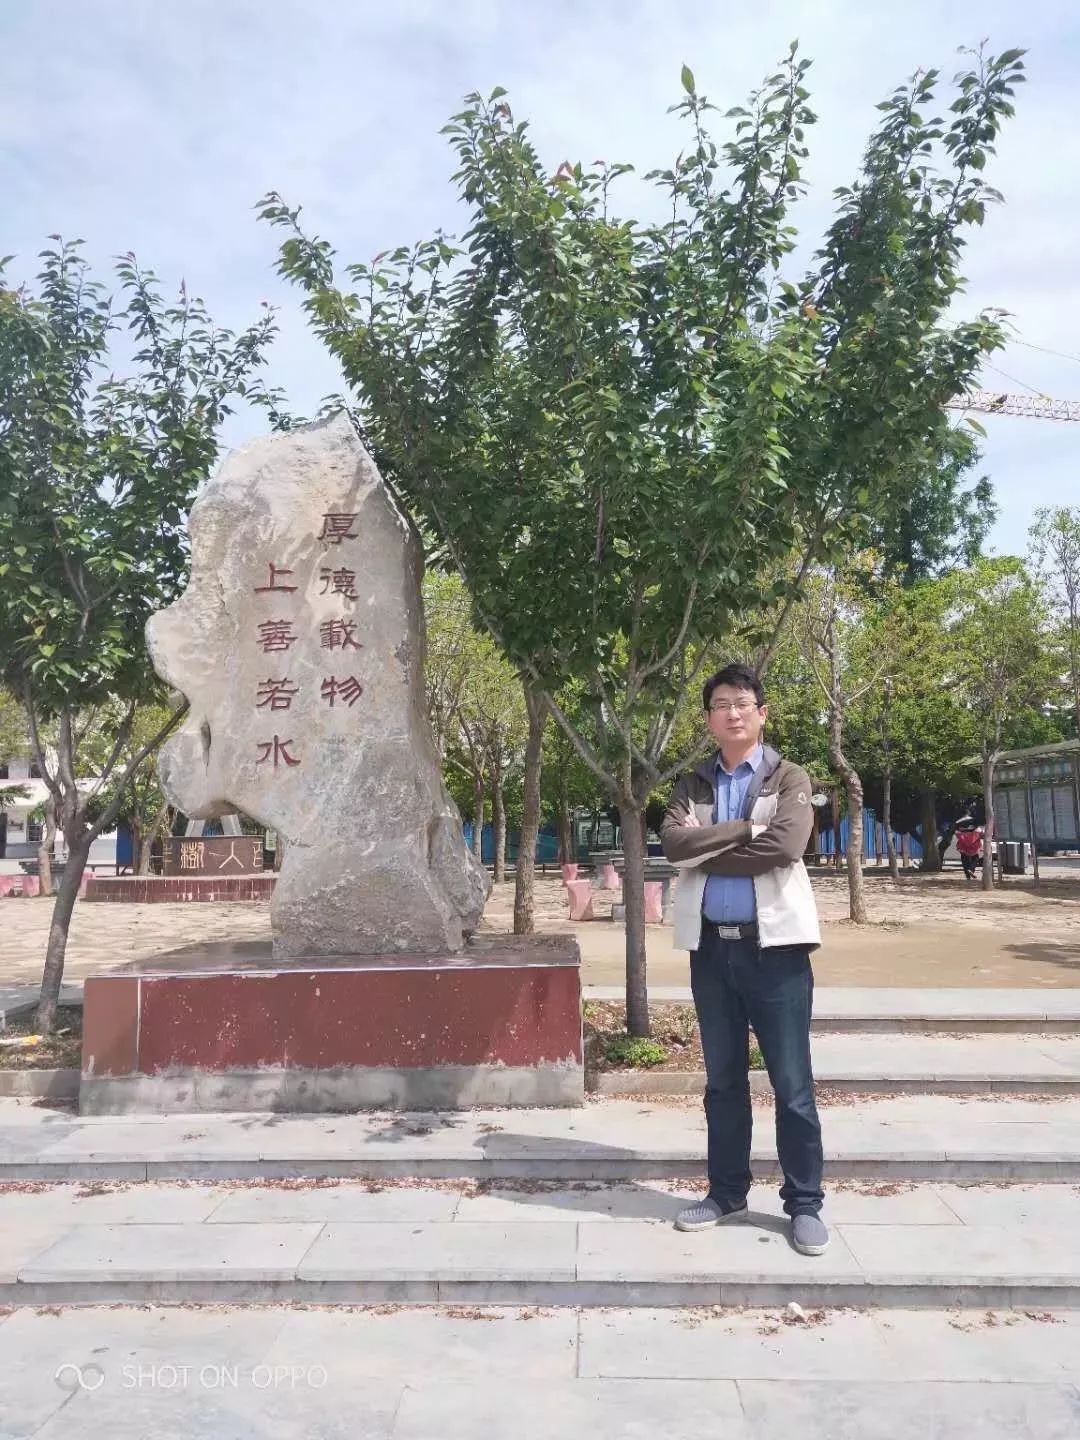 张辉,邳州市车辐山中学物理教师,教书育人之闲暇,喜欢读书和写写小文